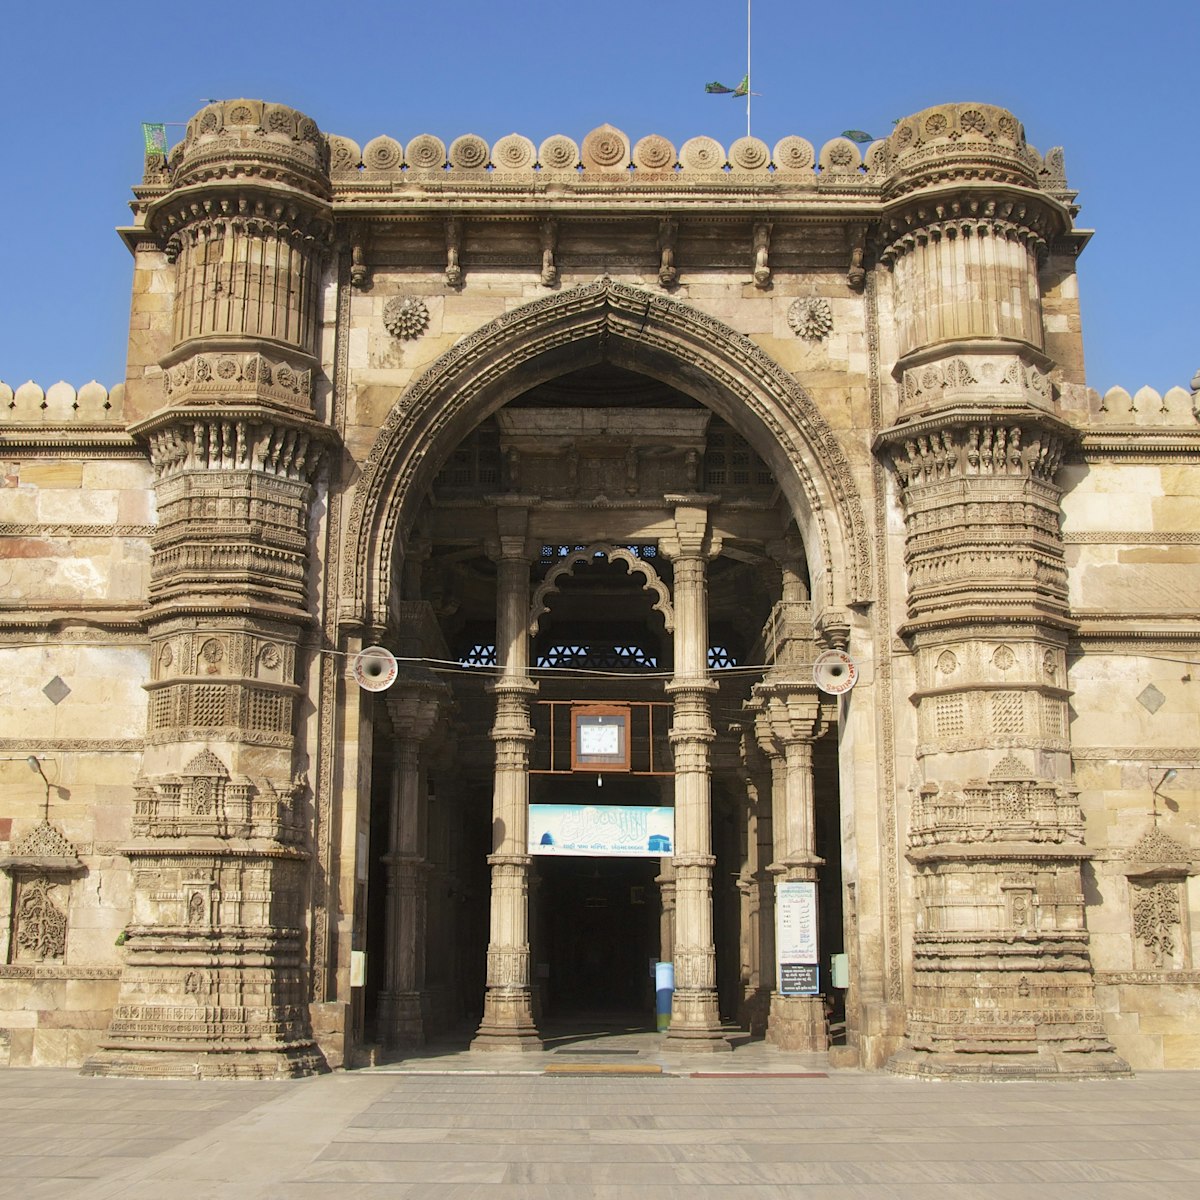 Jama Masjid, Mosque, Ahmedabad, Gujarat, India